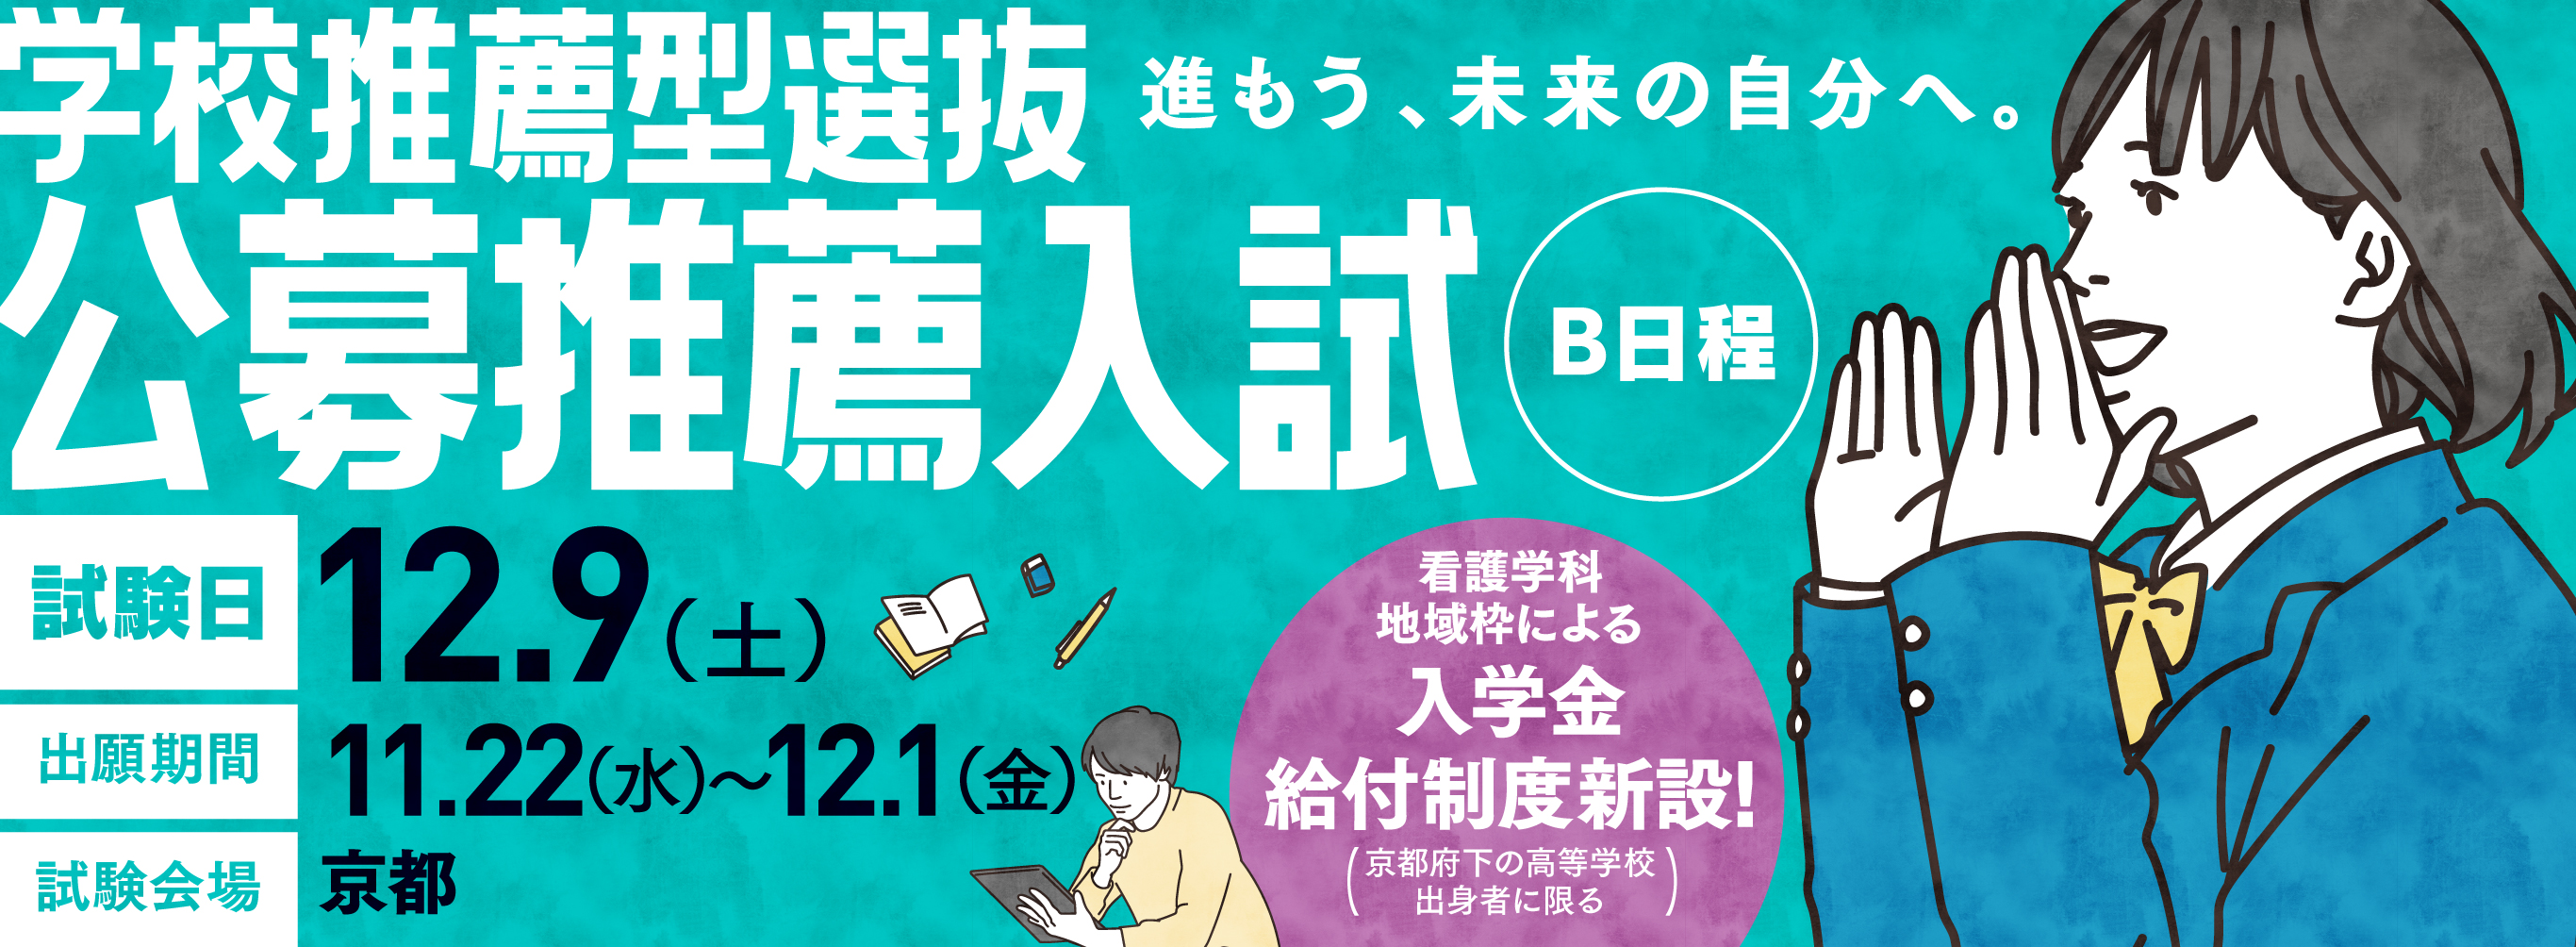 学校推薦型選抜 公募推薦入試(B日程)